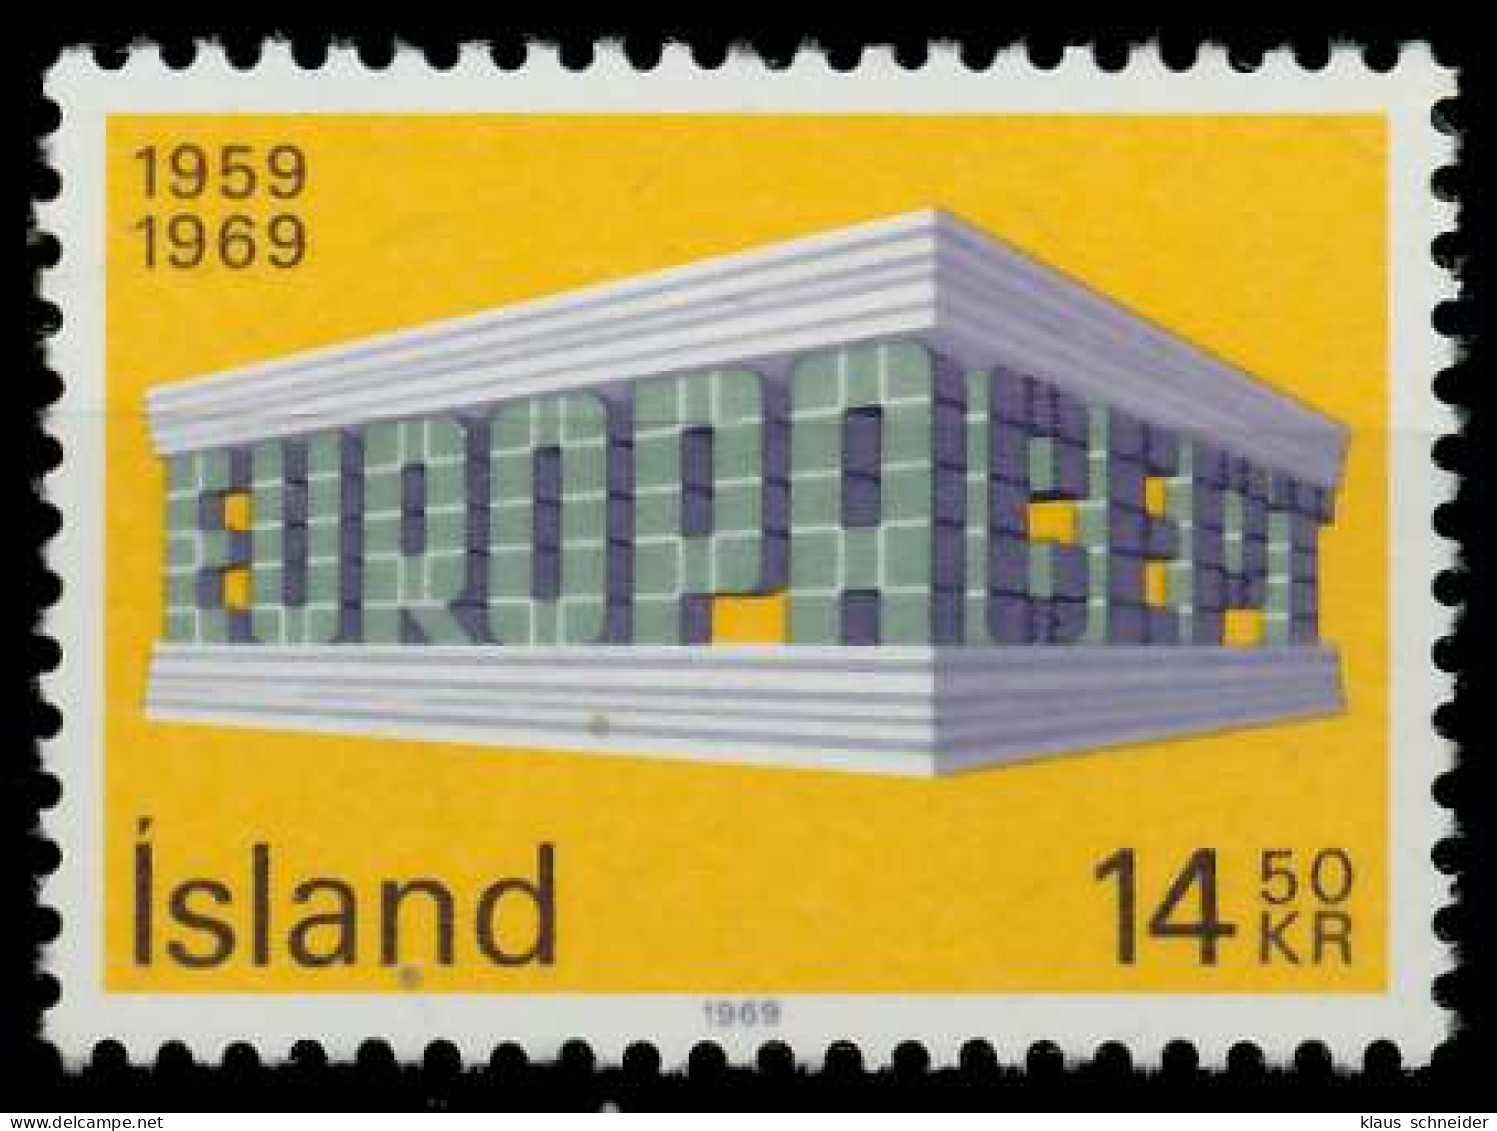 ISLAND 1969 Nr 429 Postfrisch SA5E84A - Ongebruikt